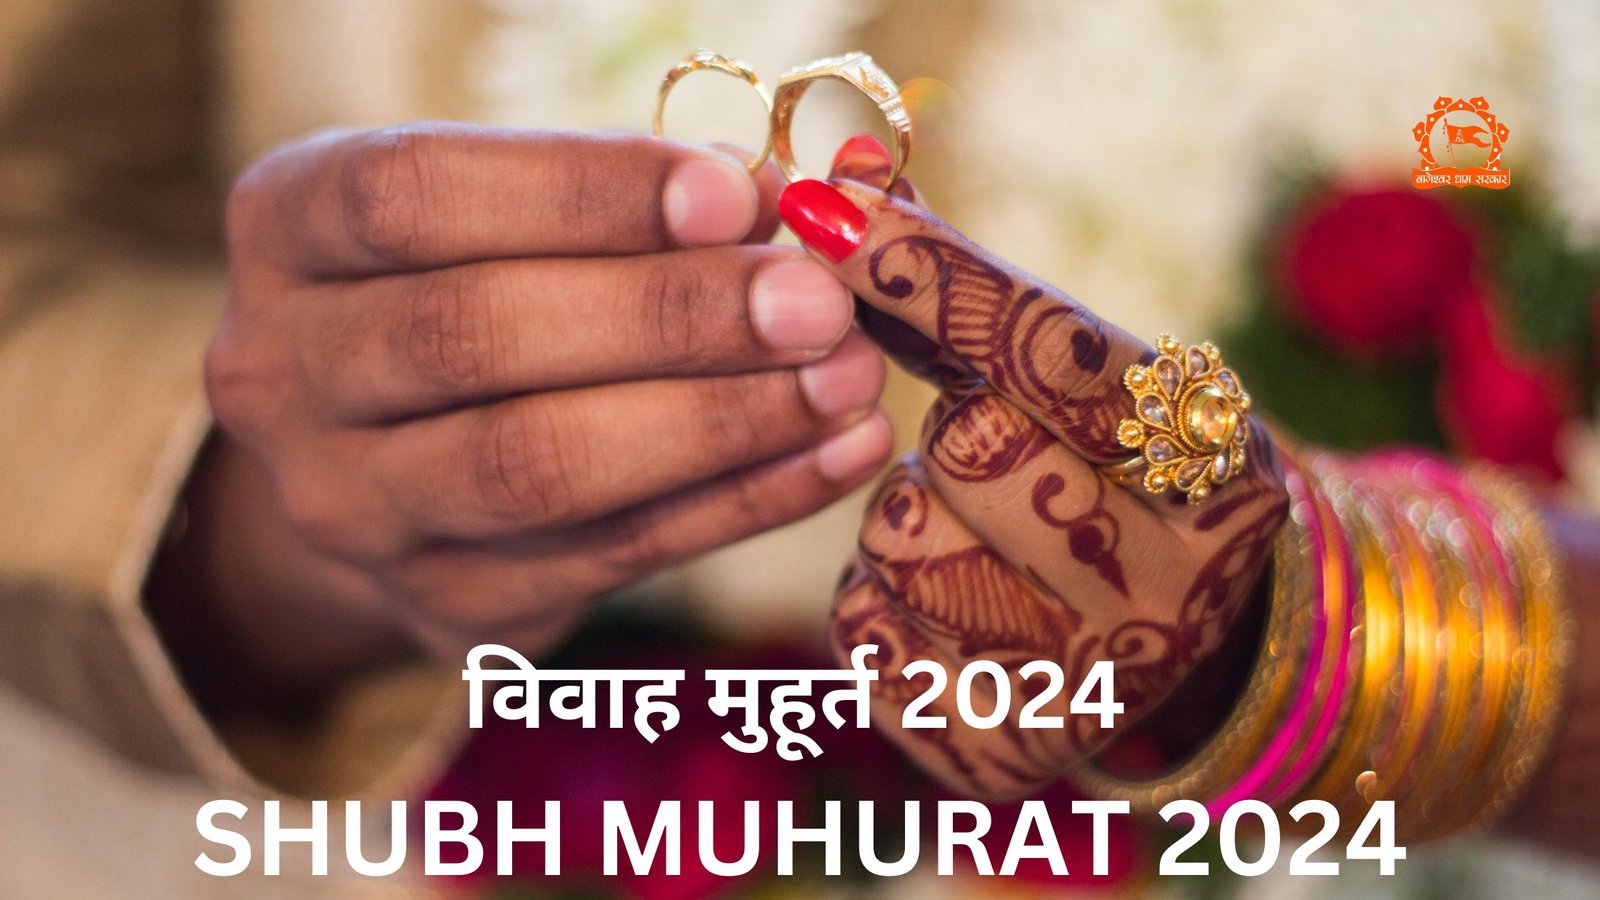 SHUBH MUHURAT 2024